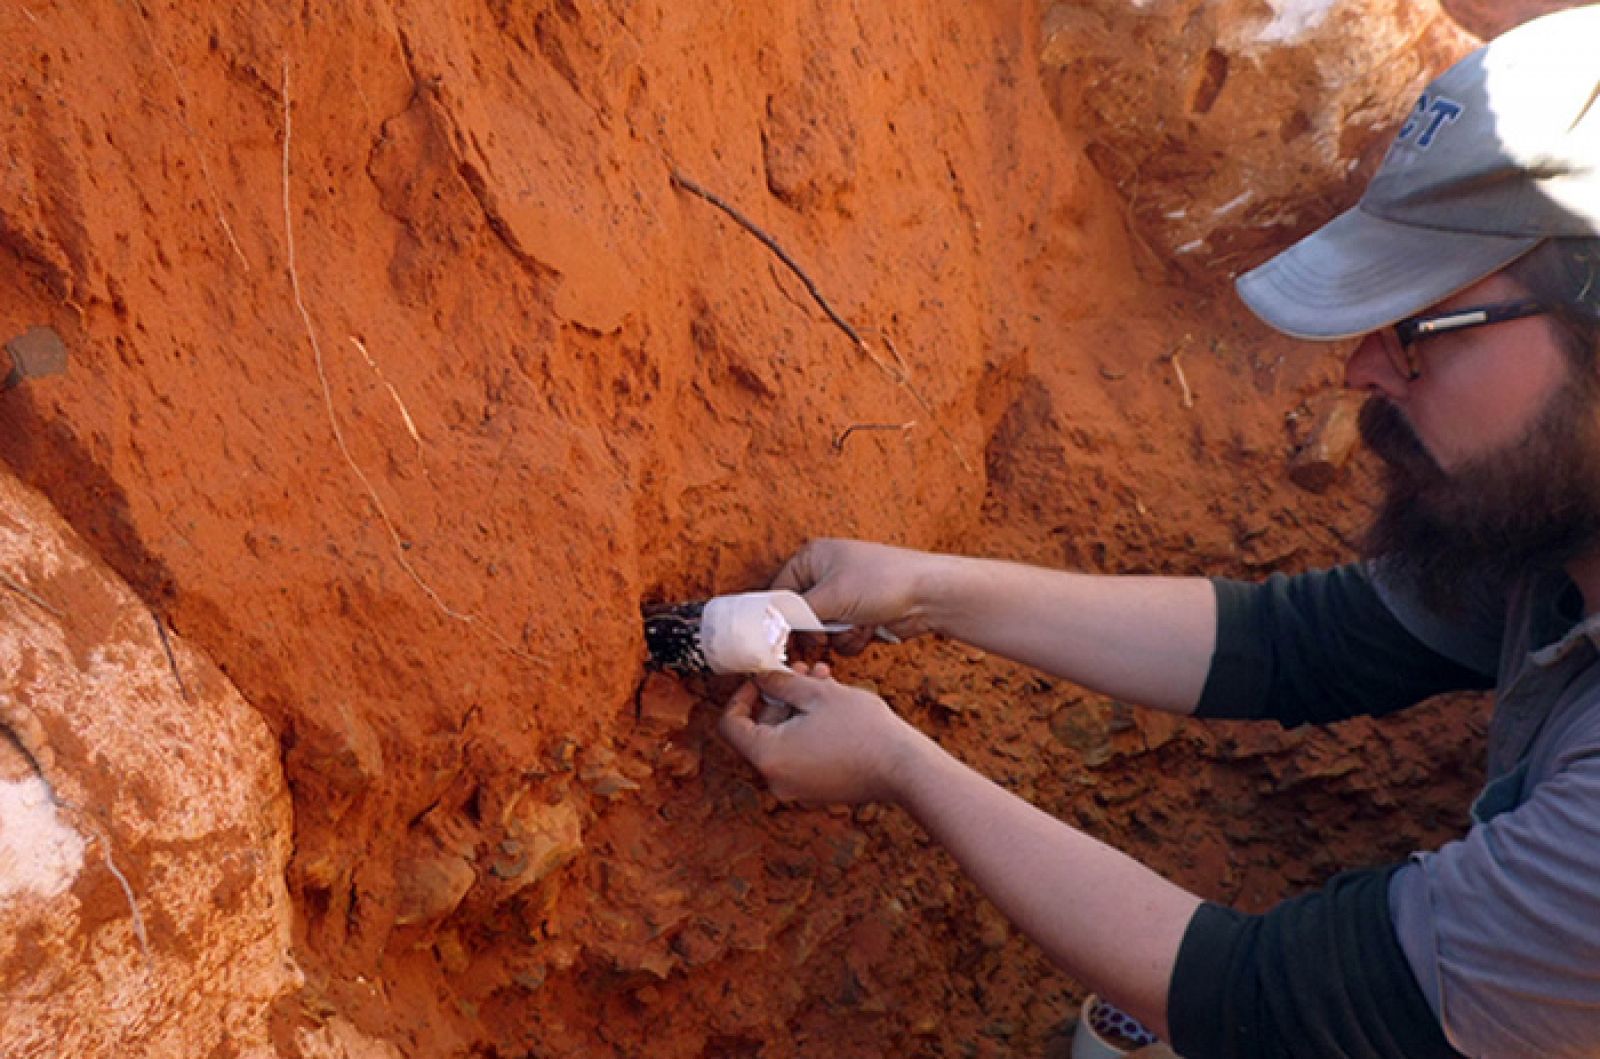 El arqueólogo de la UCT, Steven James Walker, extrae una muestra del yacimiento de Kathu.